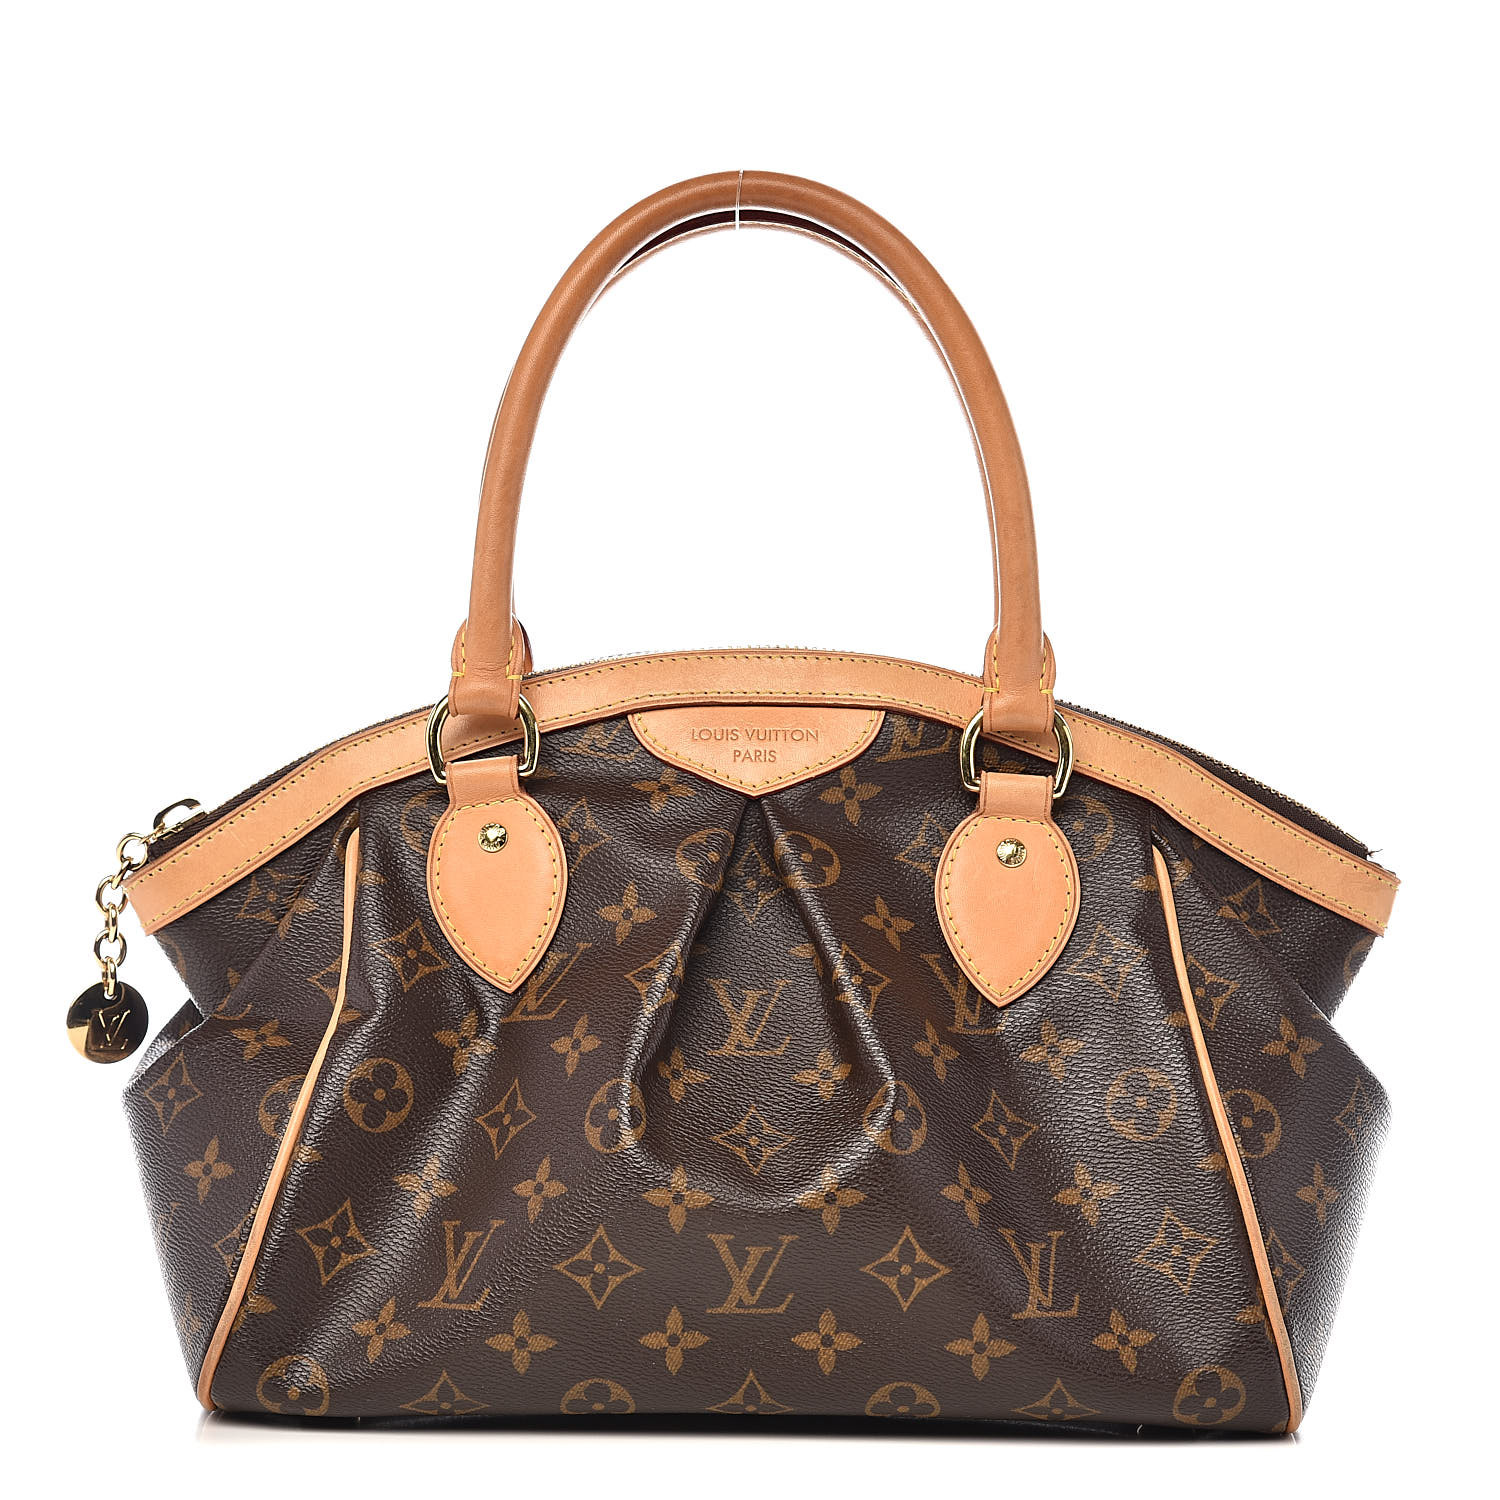 Unboxing the Louis Vuitton Damier VERONA PM Authentic bag